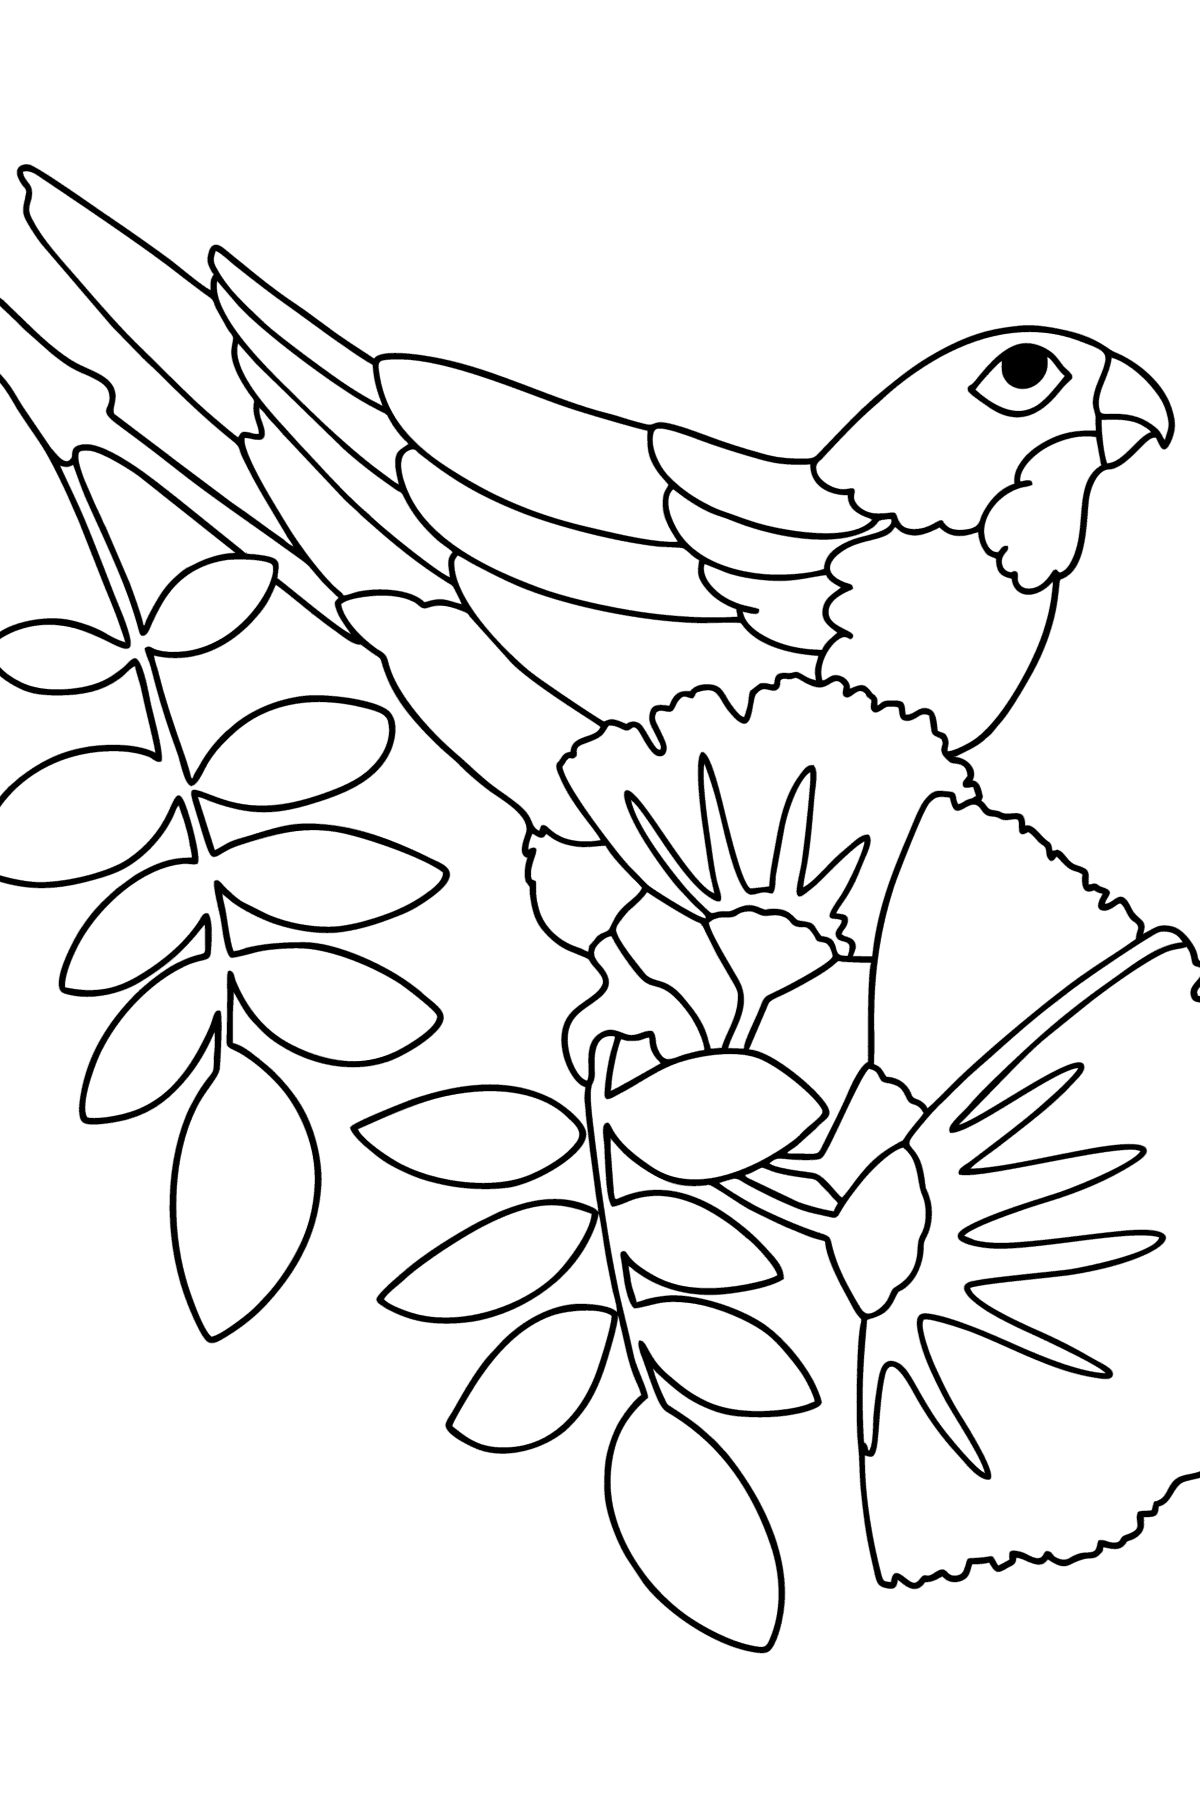 Målarbild Papegojdjungel - Målarbilder För barn